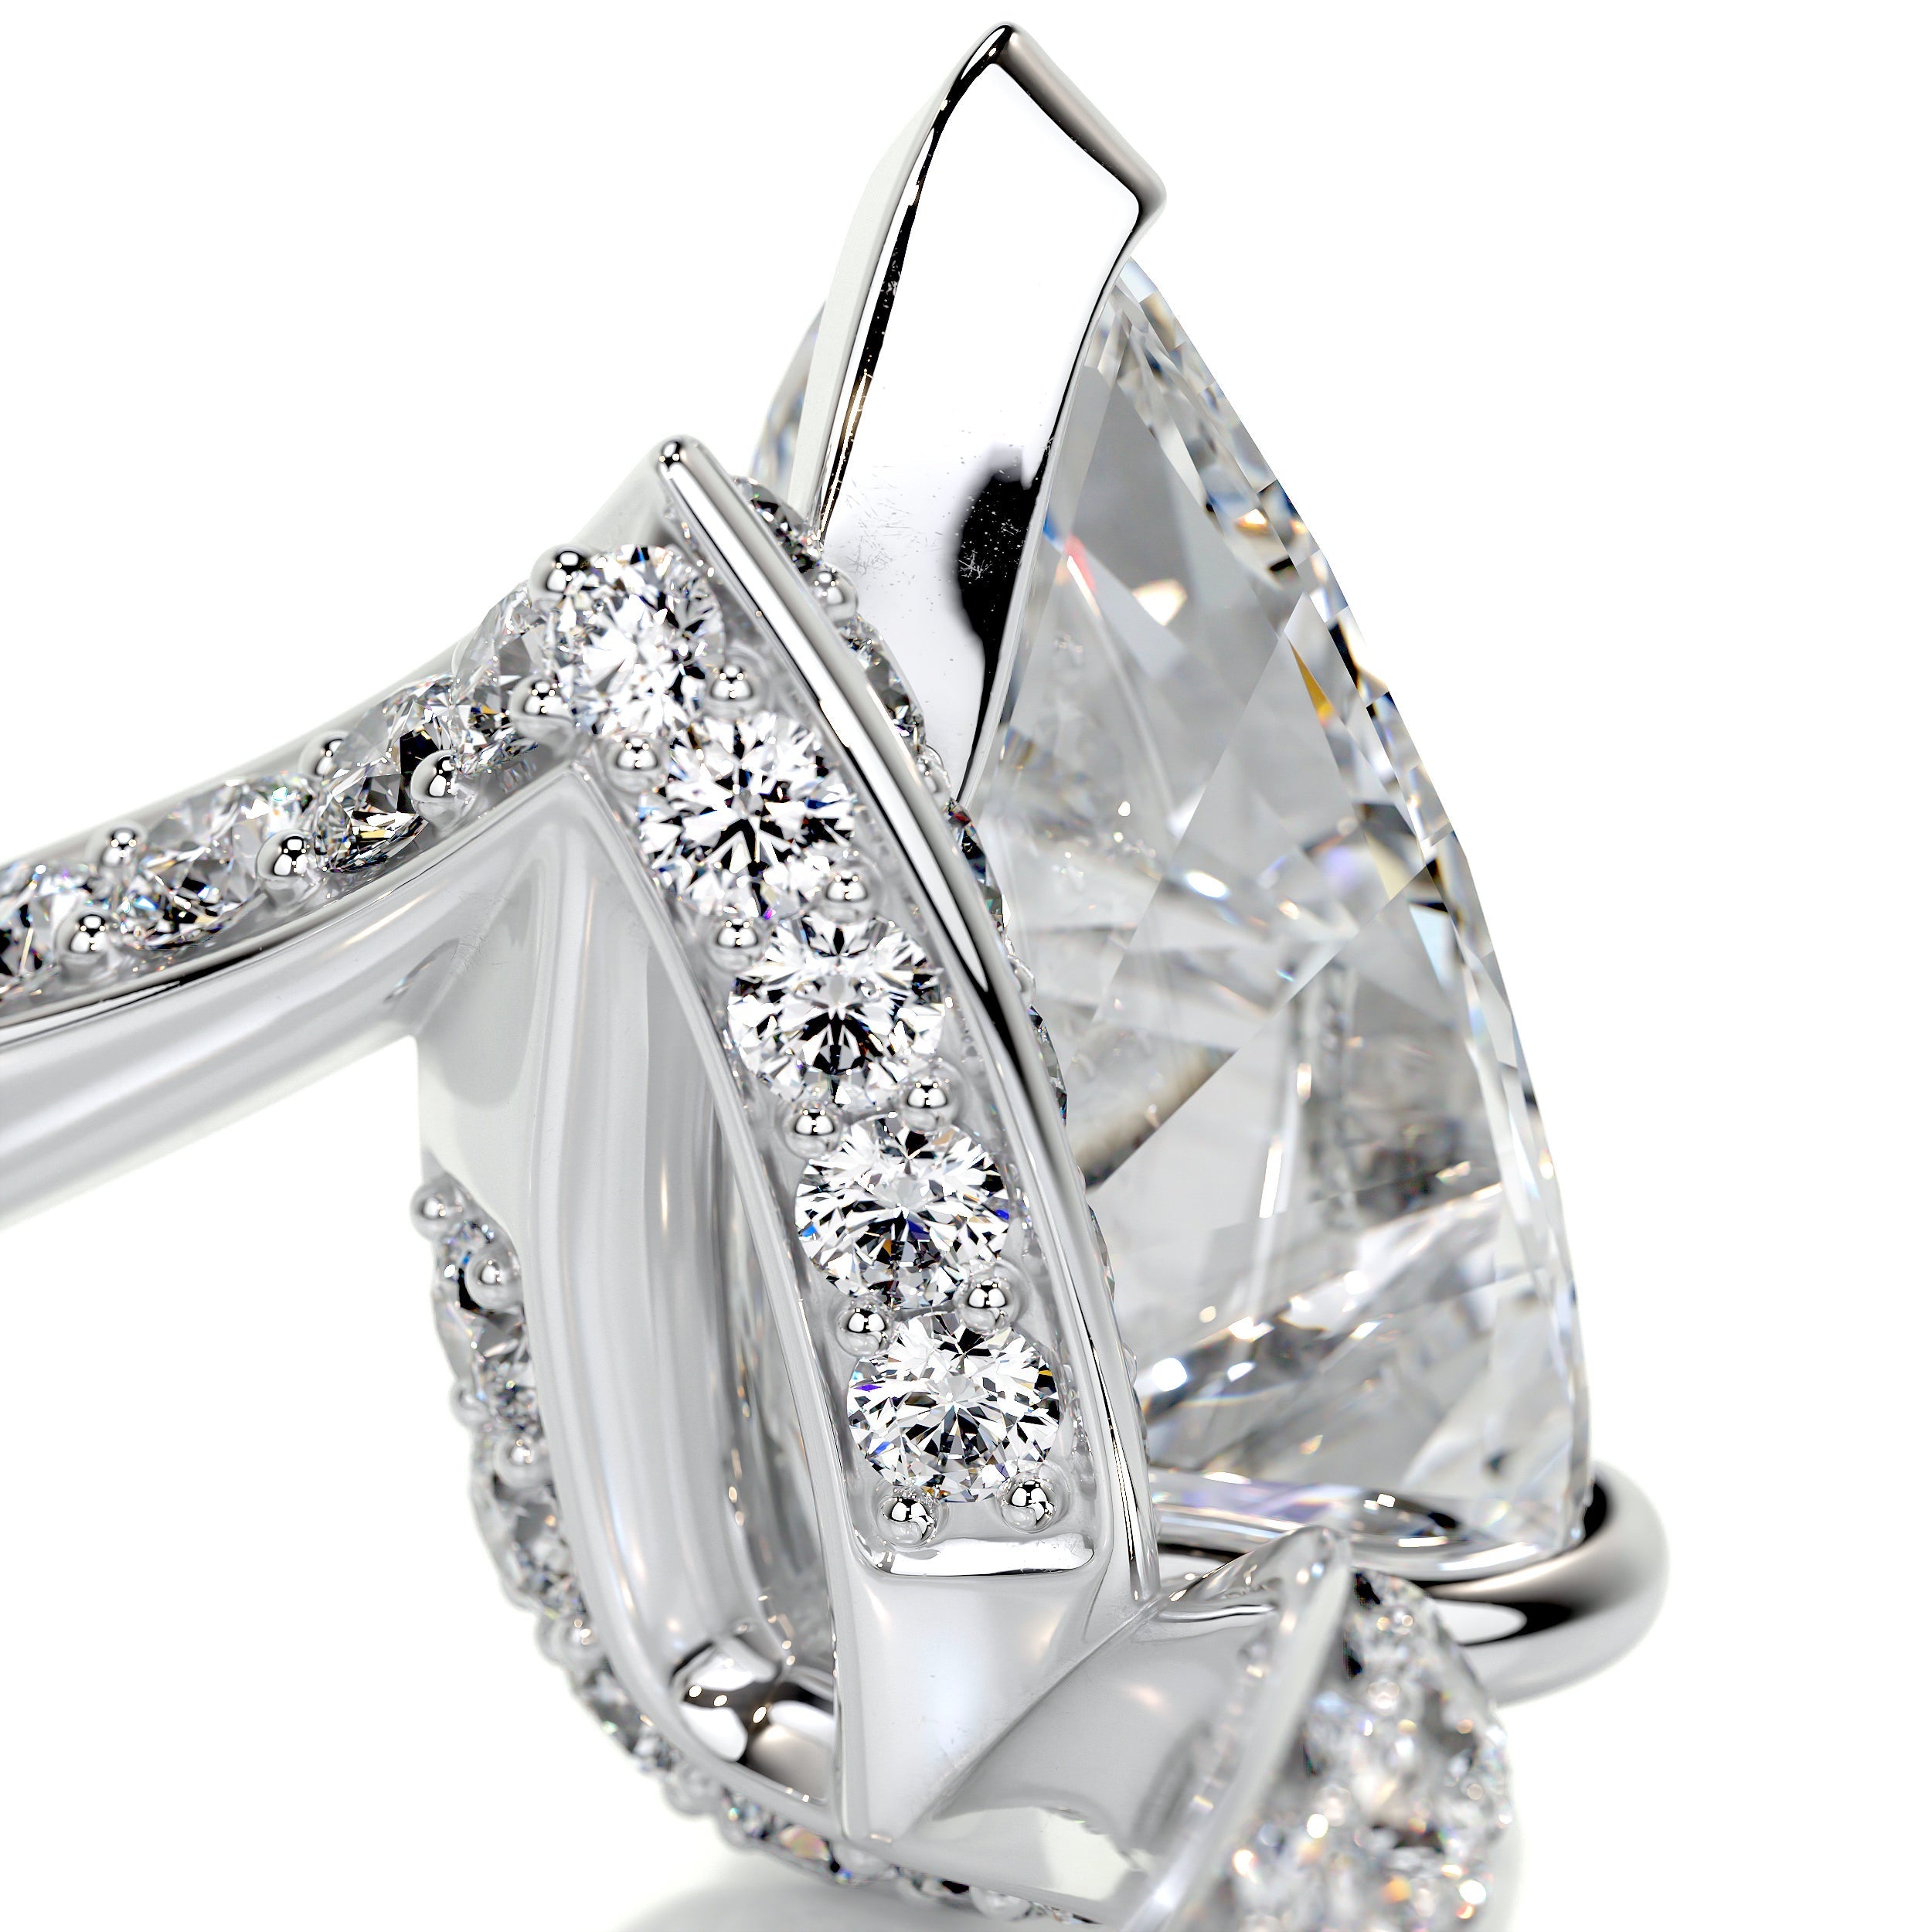 Sabrina Diamond Engagement Ring   (2.5 Carat) -14K White Gold (RTS)